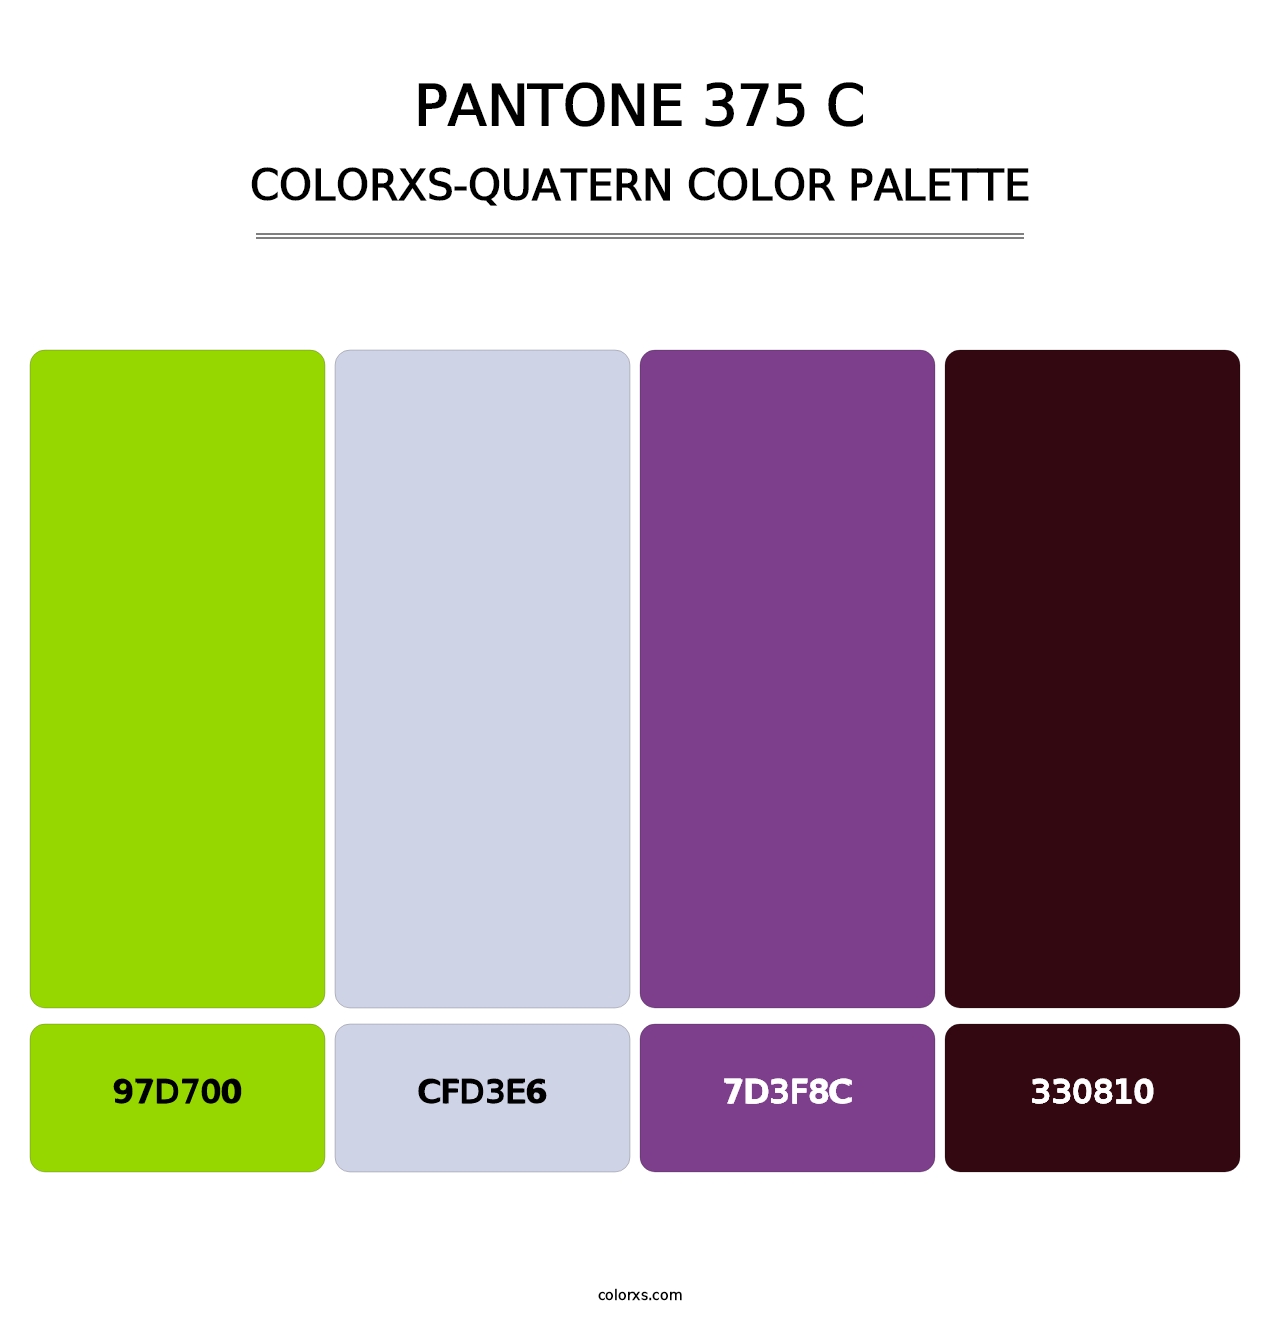 PANTONE 375 C - Colorxs Quatern Palette